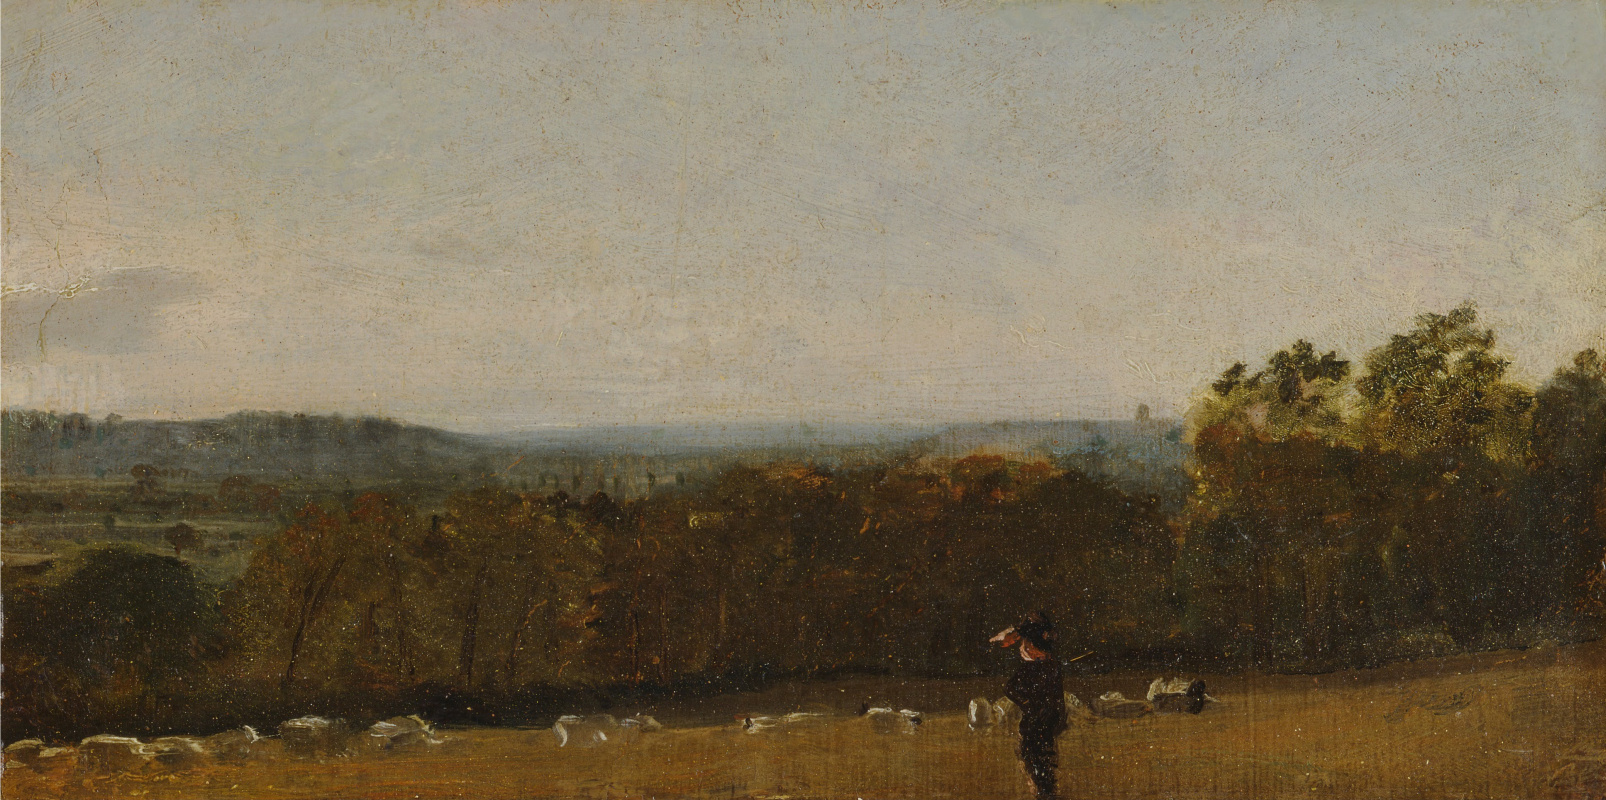 John Constable. A Shepherd in a Landscape